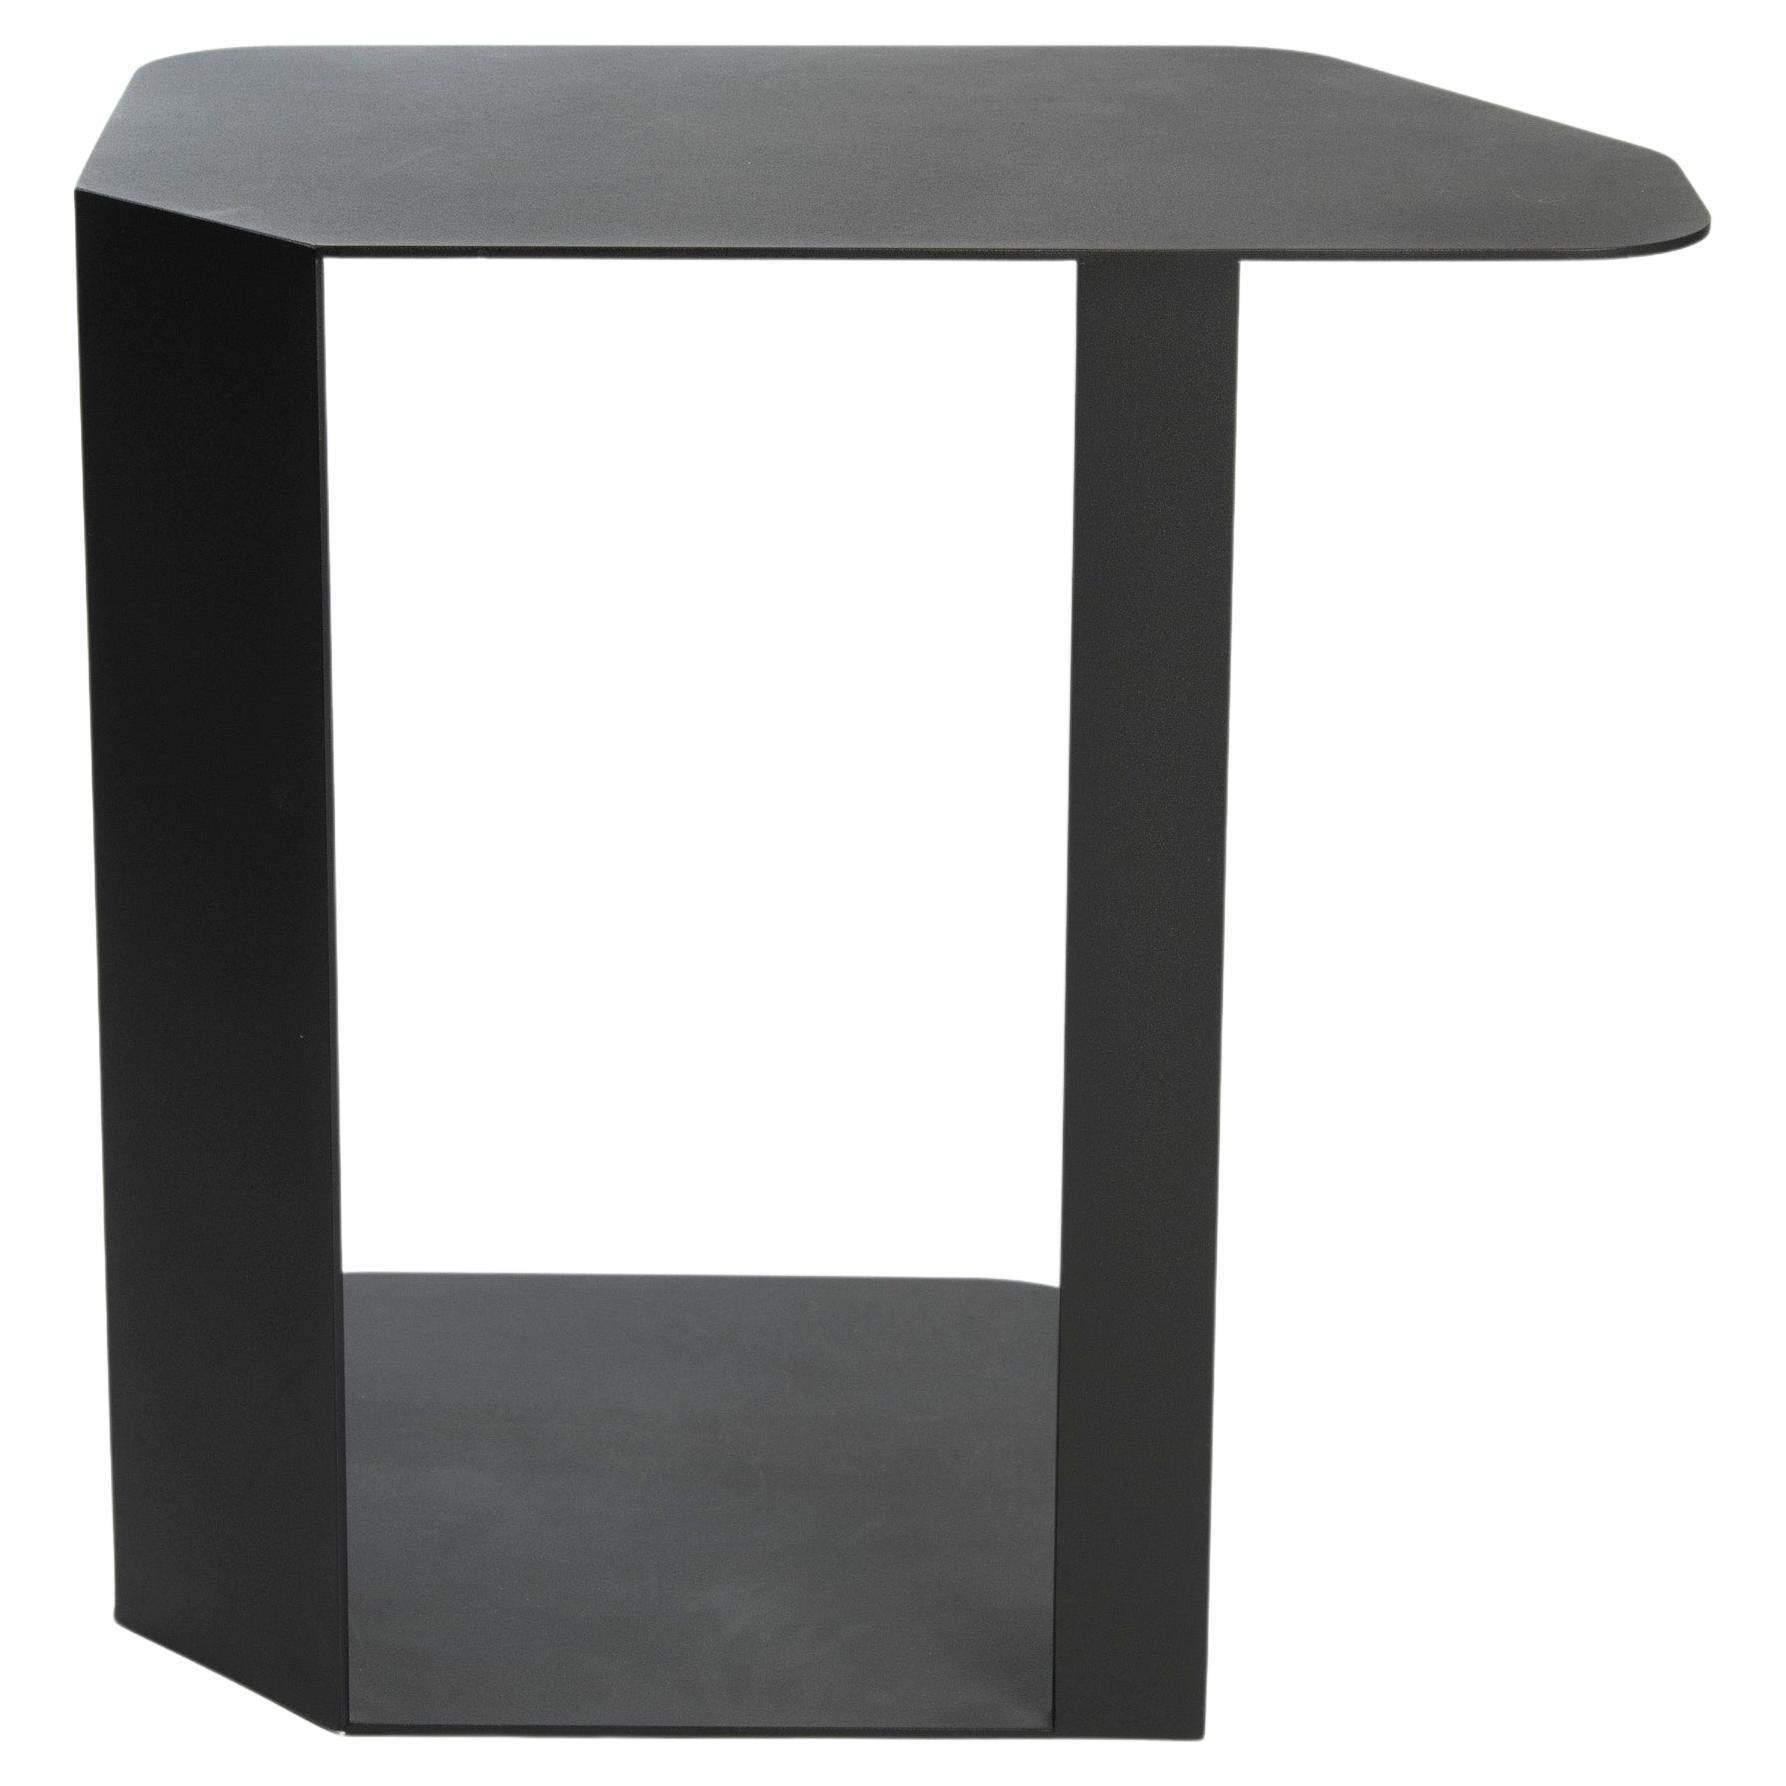 Table d'appoint pour ordinateur portable en aluminium noir minimaliste om37 par mjiila, en stock